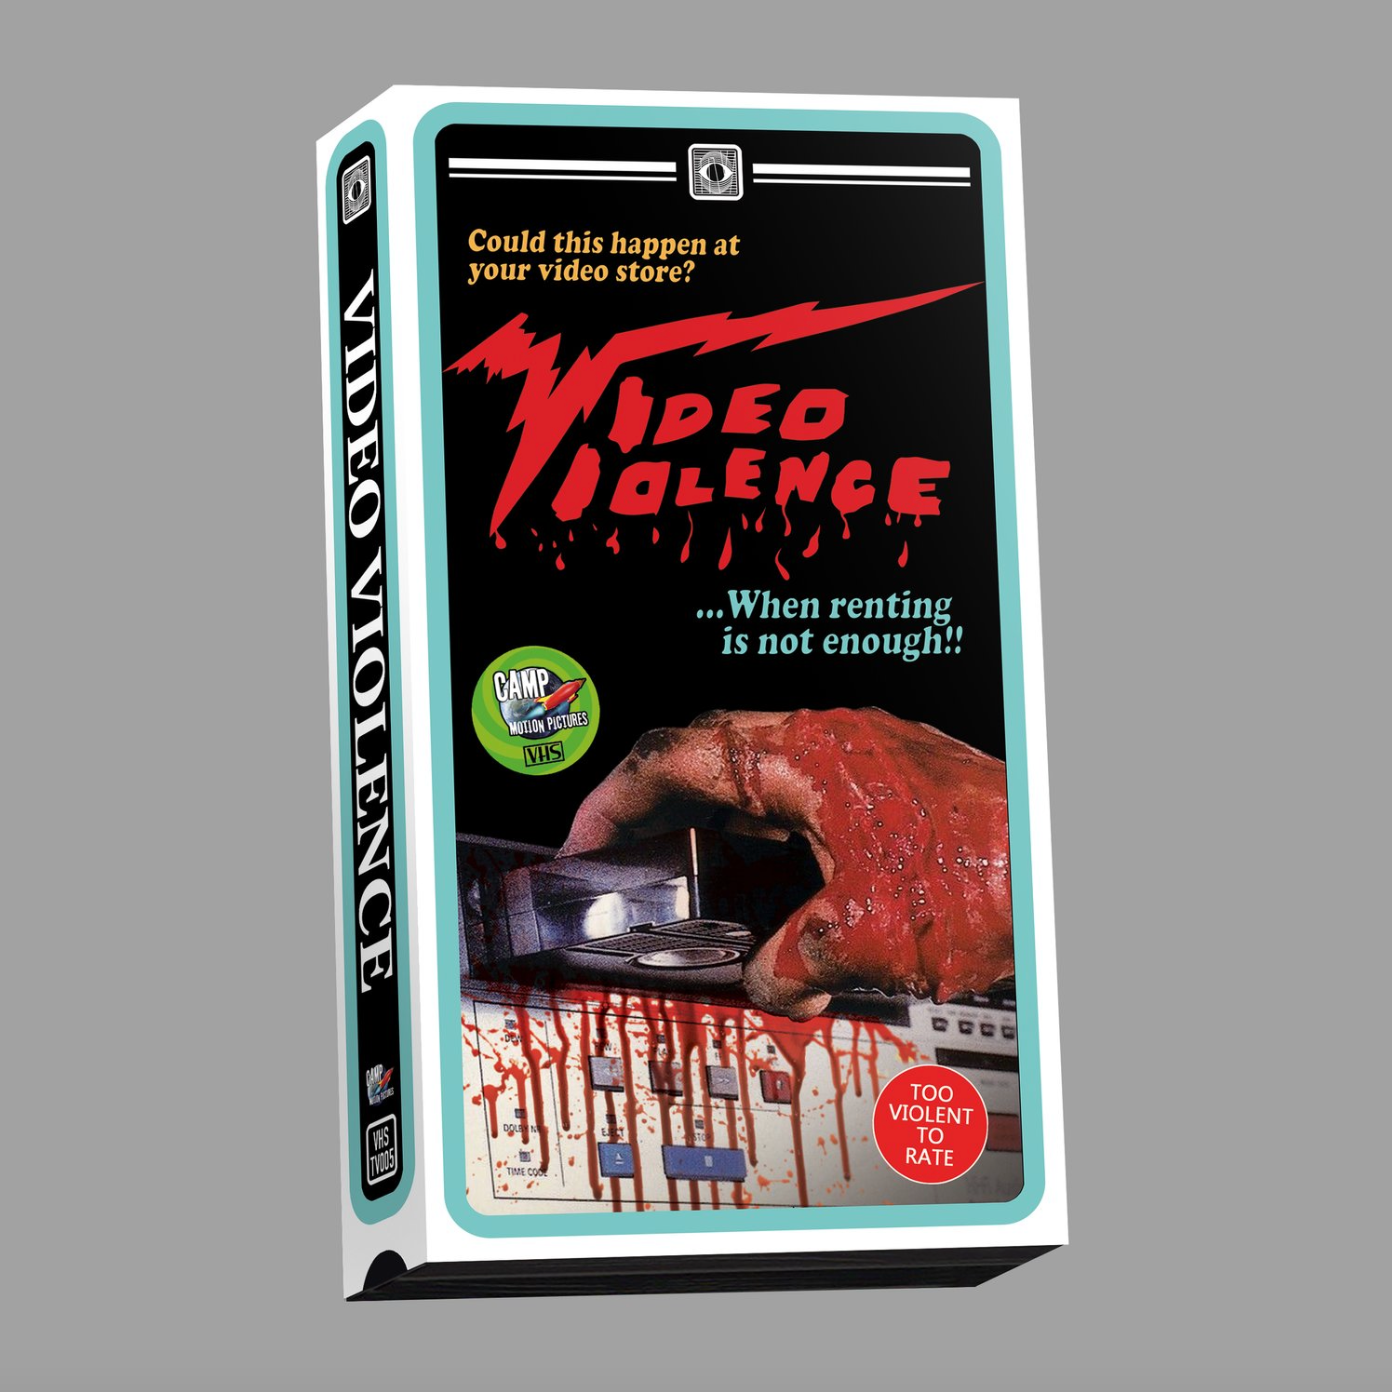 Video Violence LTD VHS Release